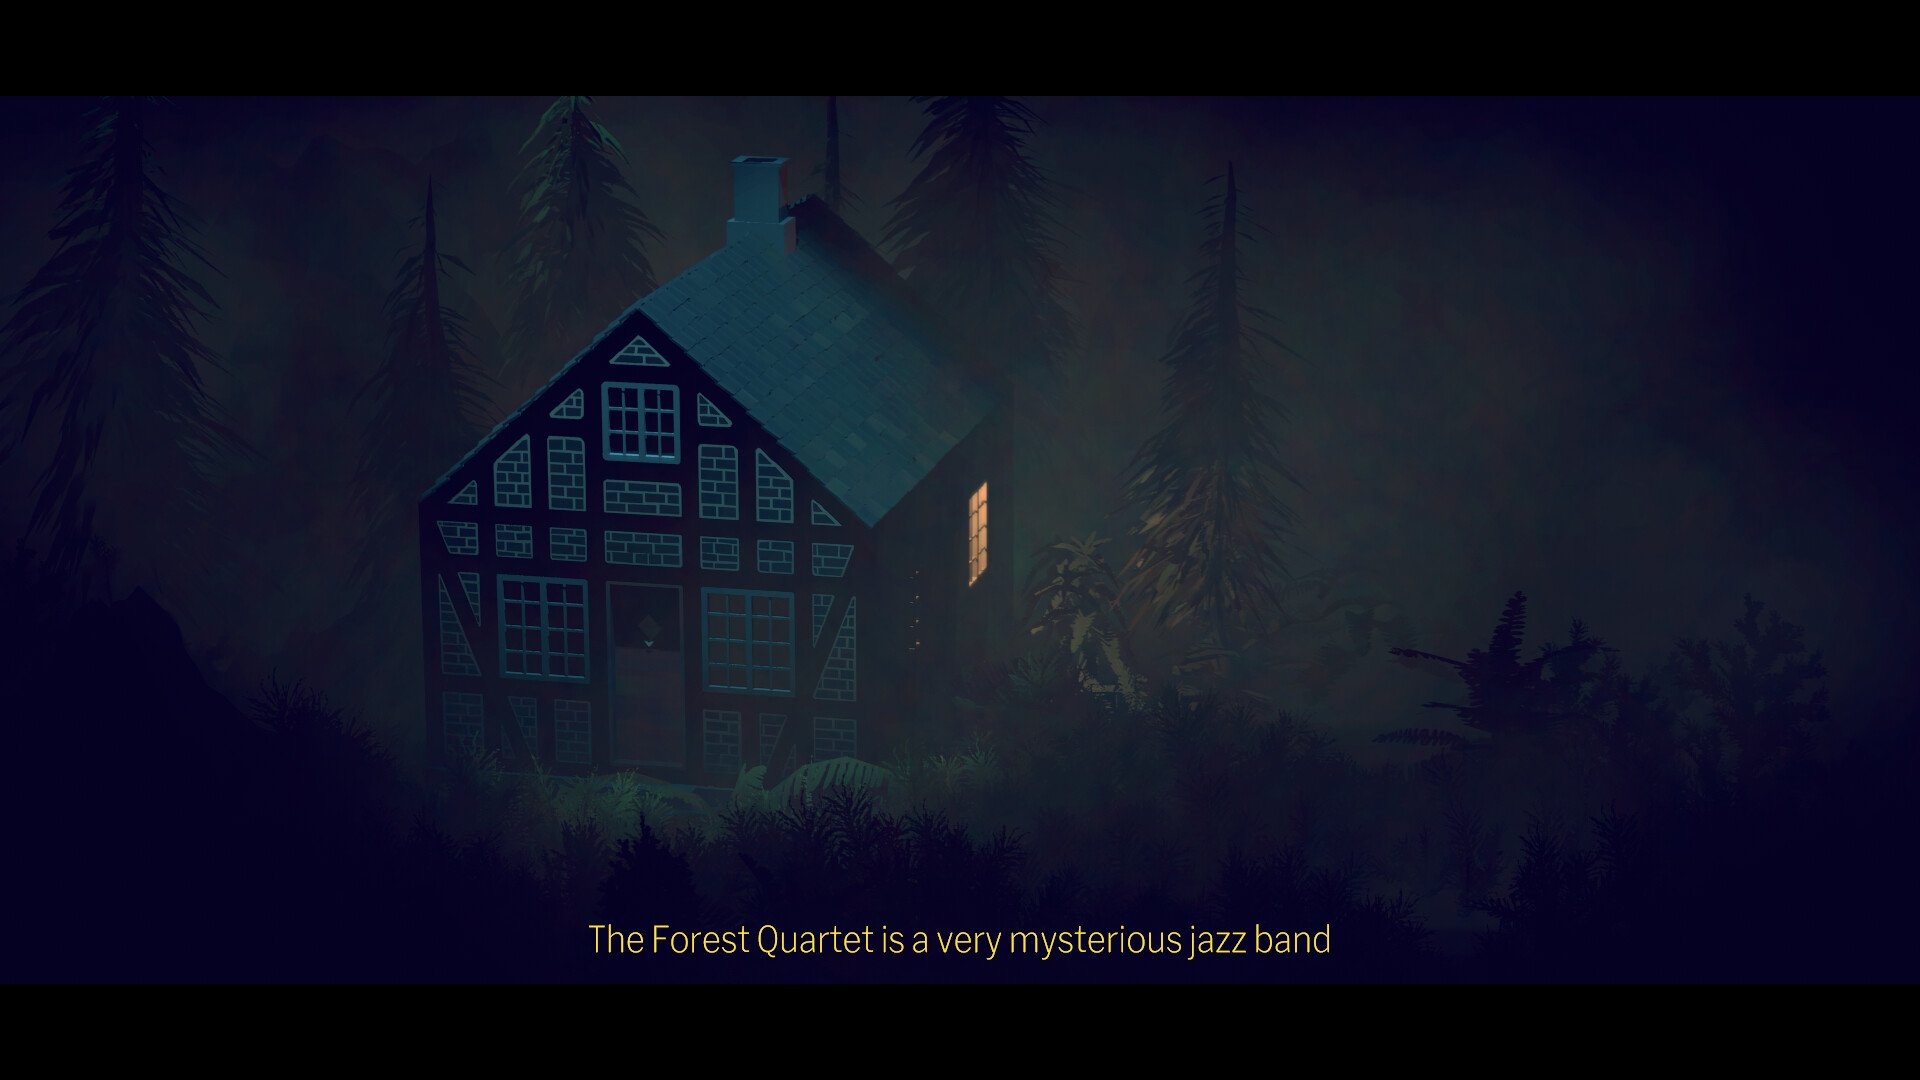 Out of Line e The Forest Quartet são os jogos grátis da semana na